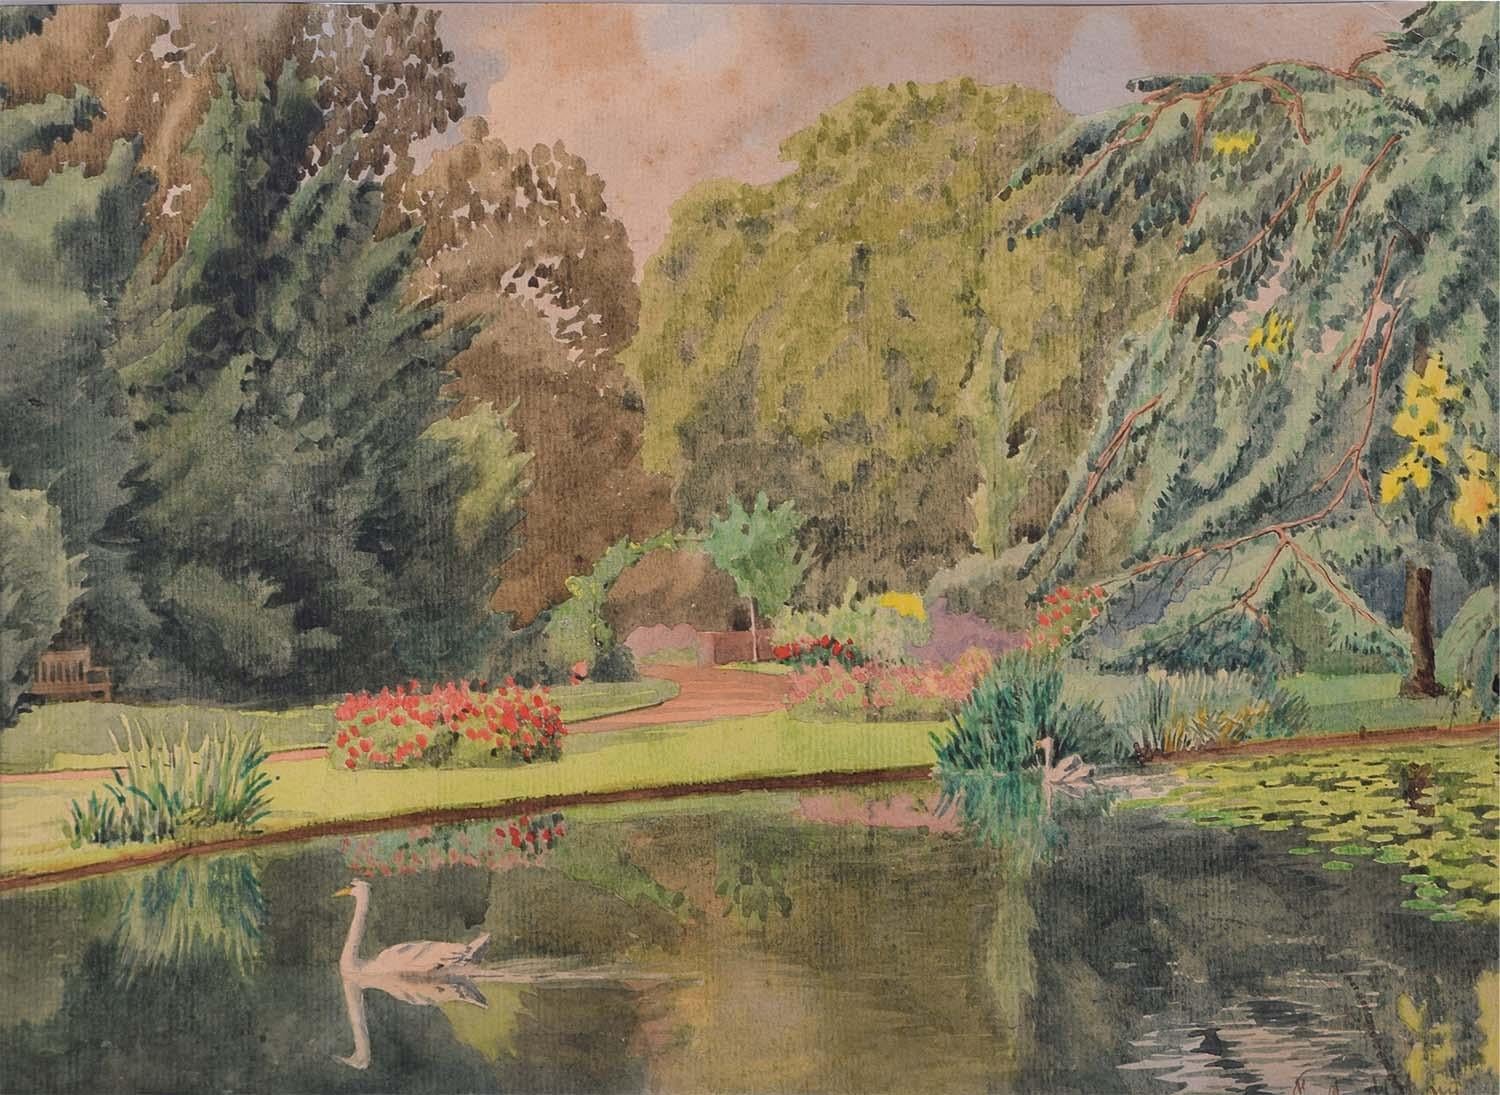 Landscape Art Major F.A. Molony - Aquarelle du major F A Molony Fellows Garden, Emmanuel College, Cambridge